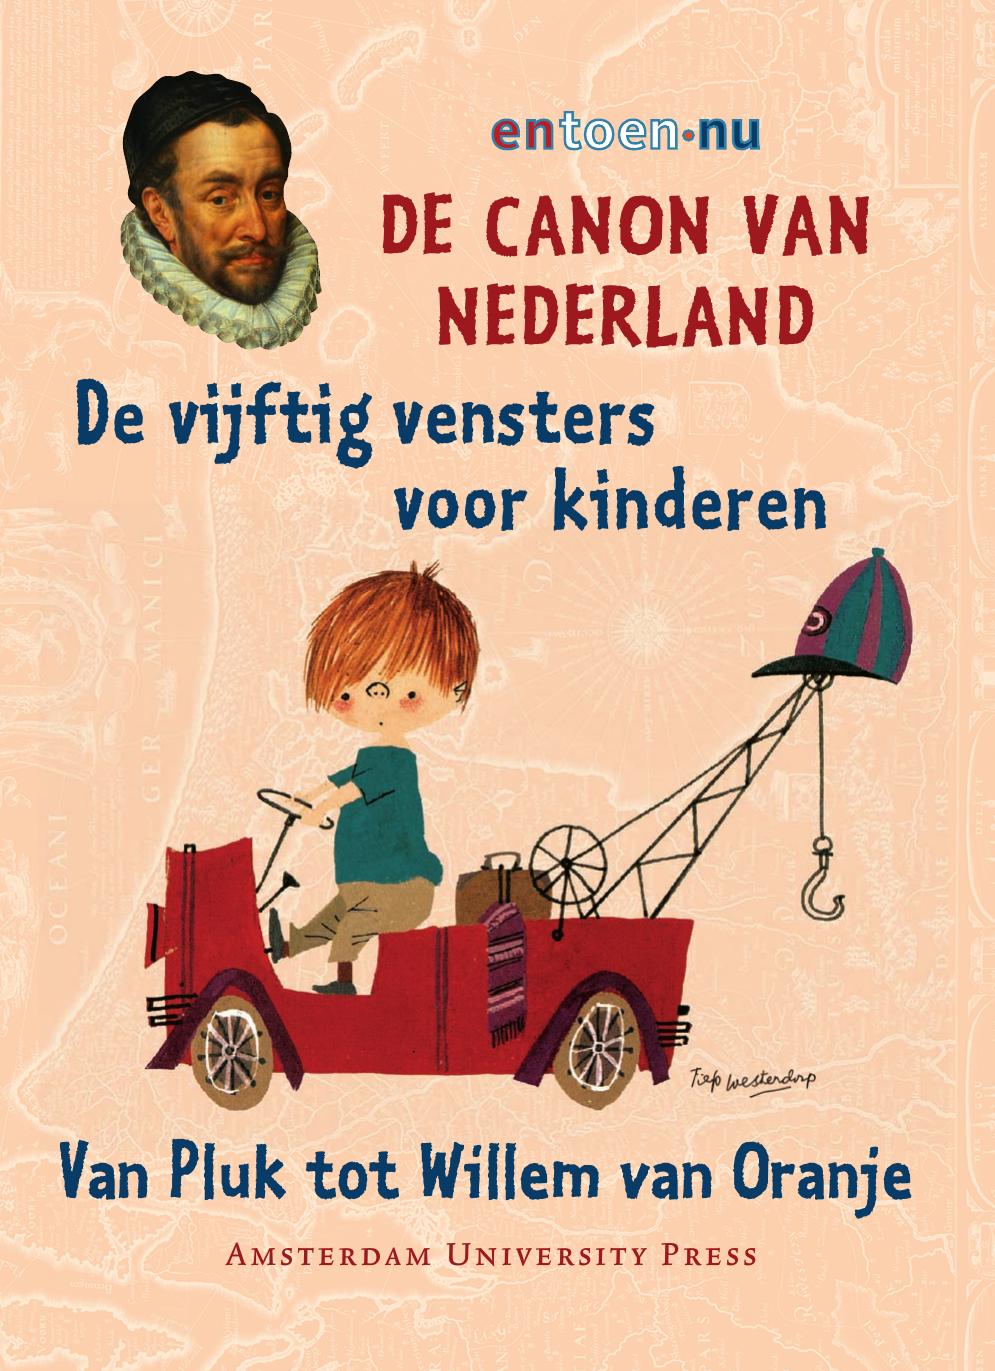 De Canon van Nederland: de vijftig vensters voor Kinderen